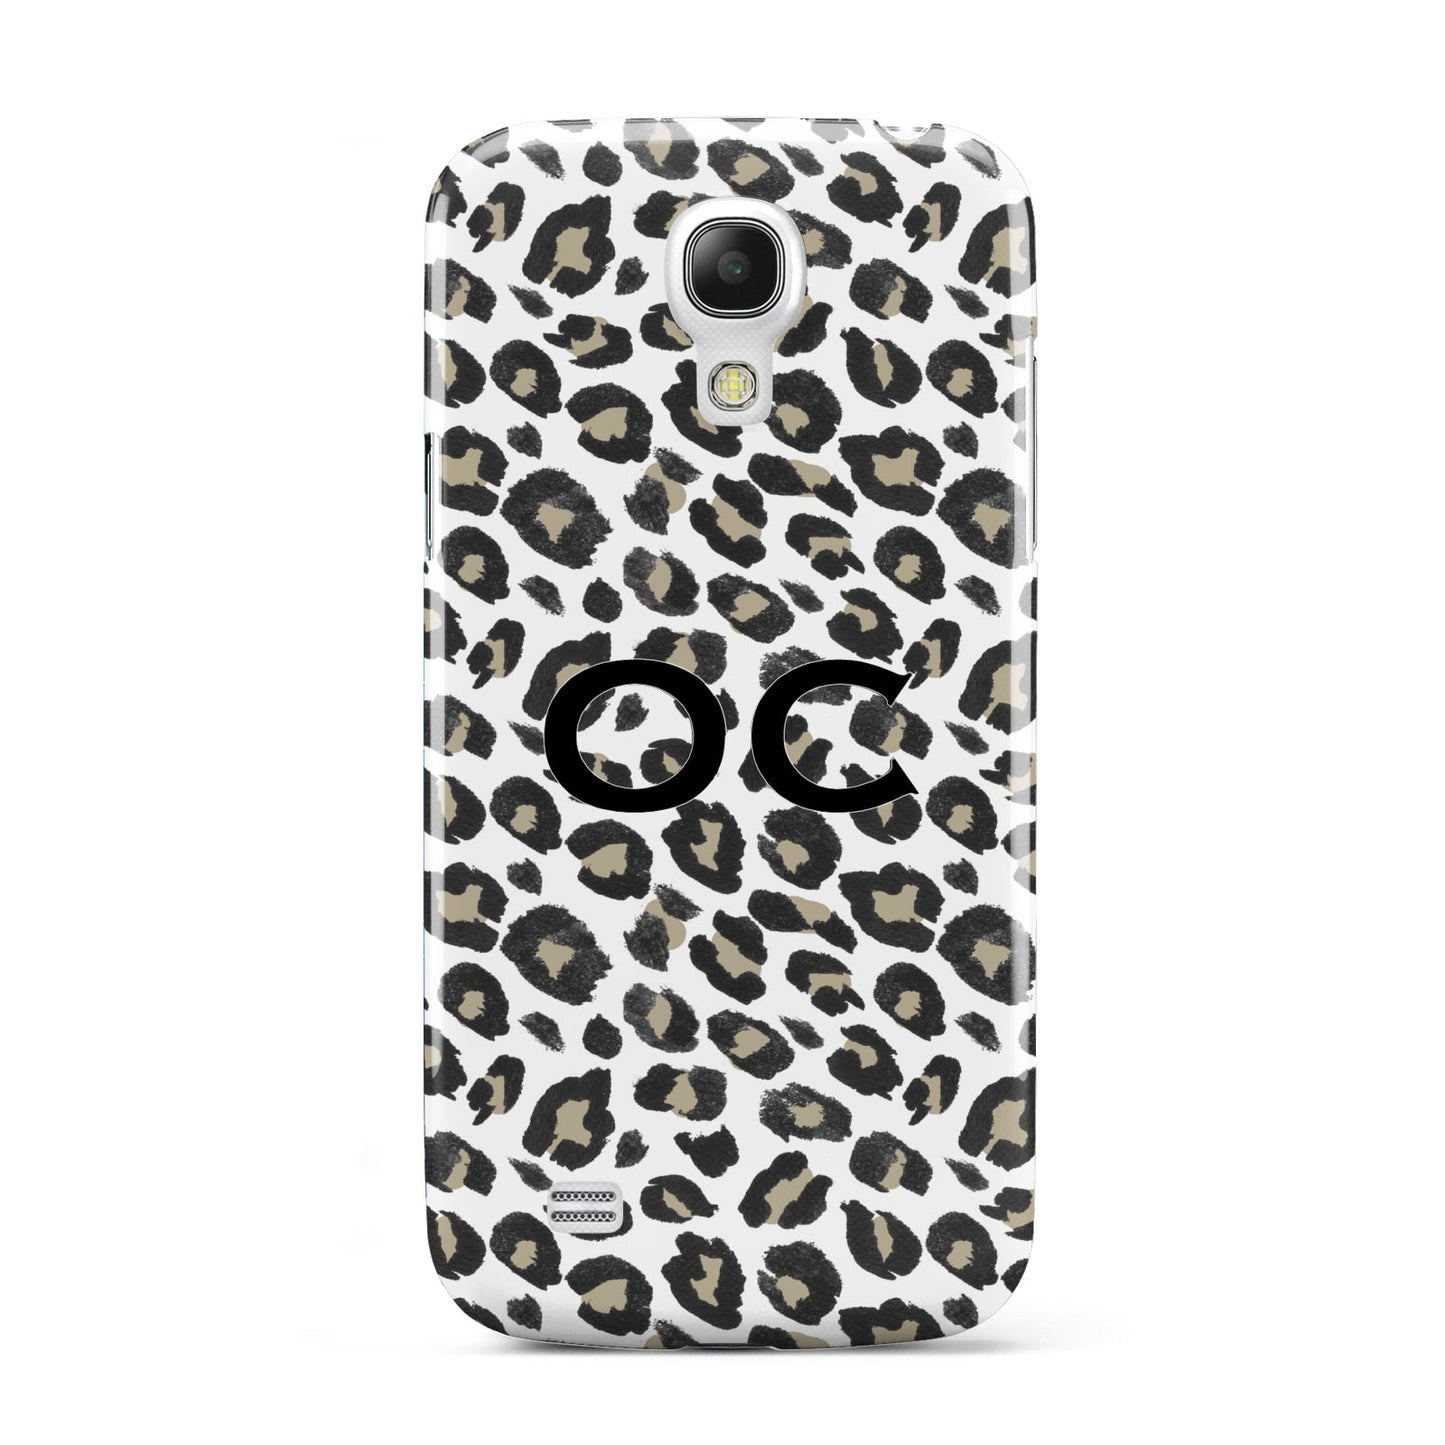 Tan Leopard Print Pattern Samsung Galaxy S4 Mini Case